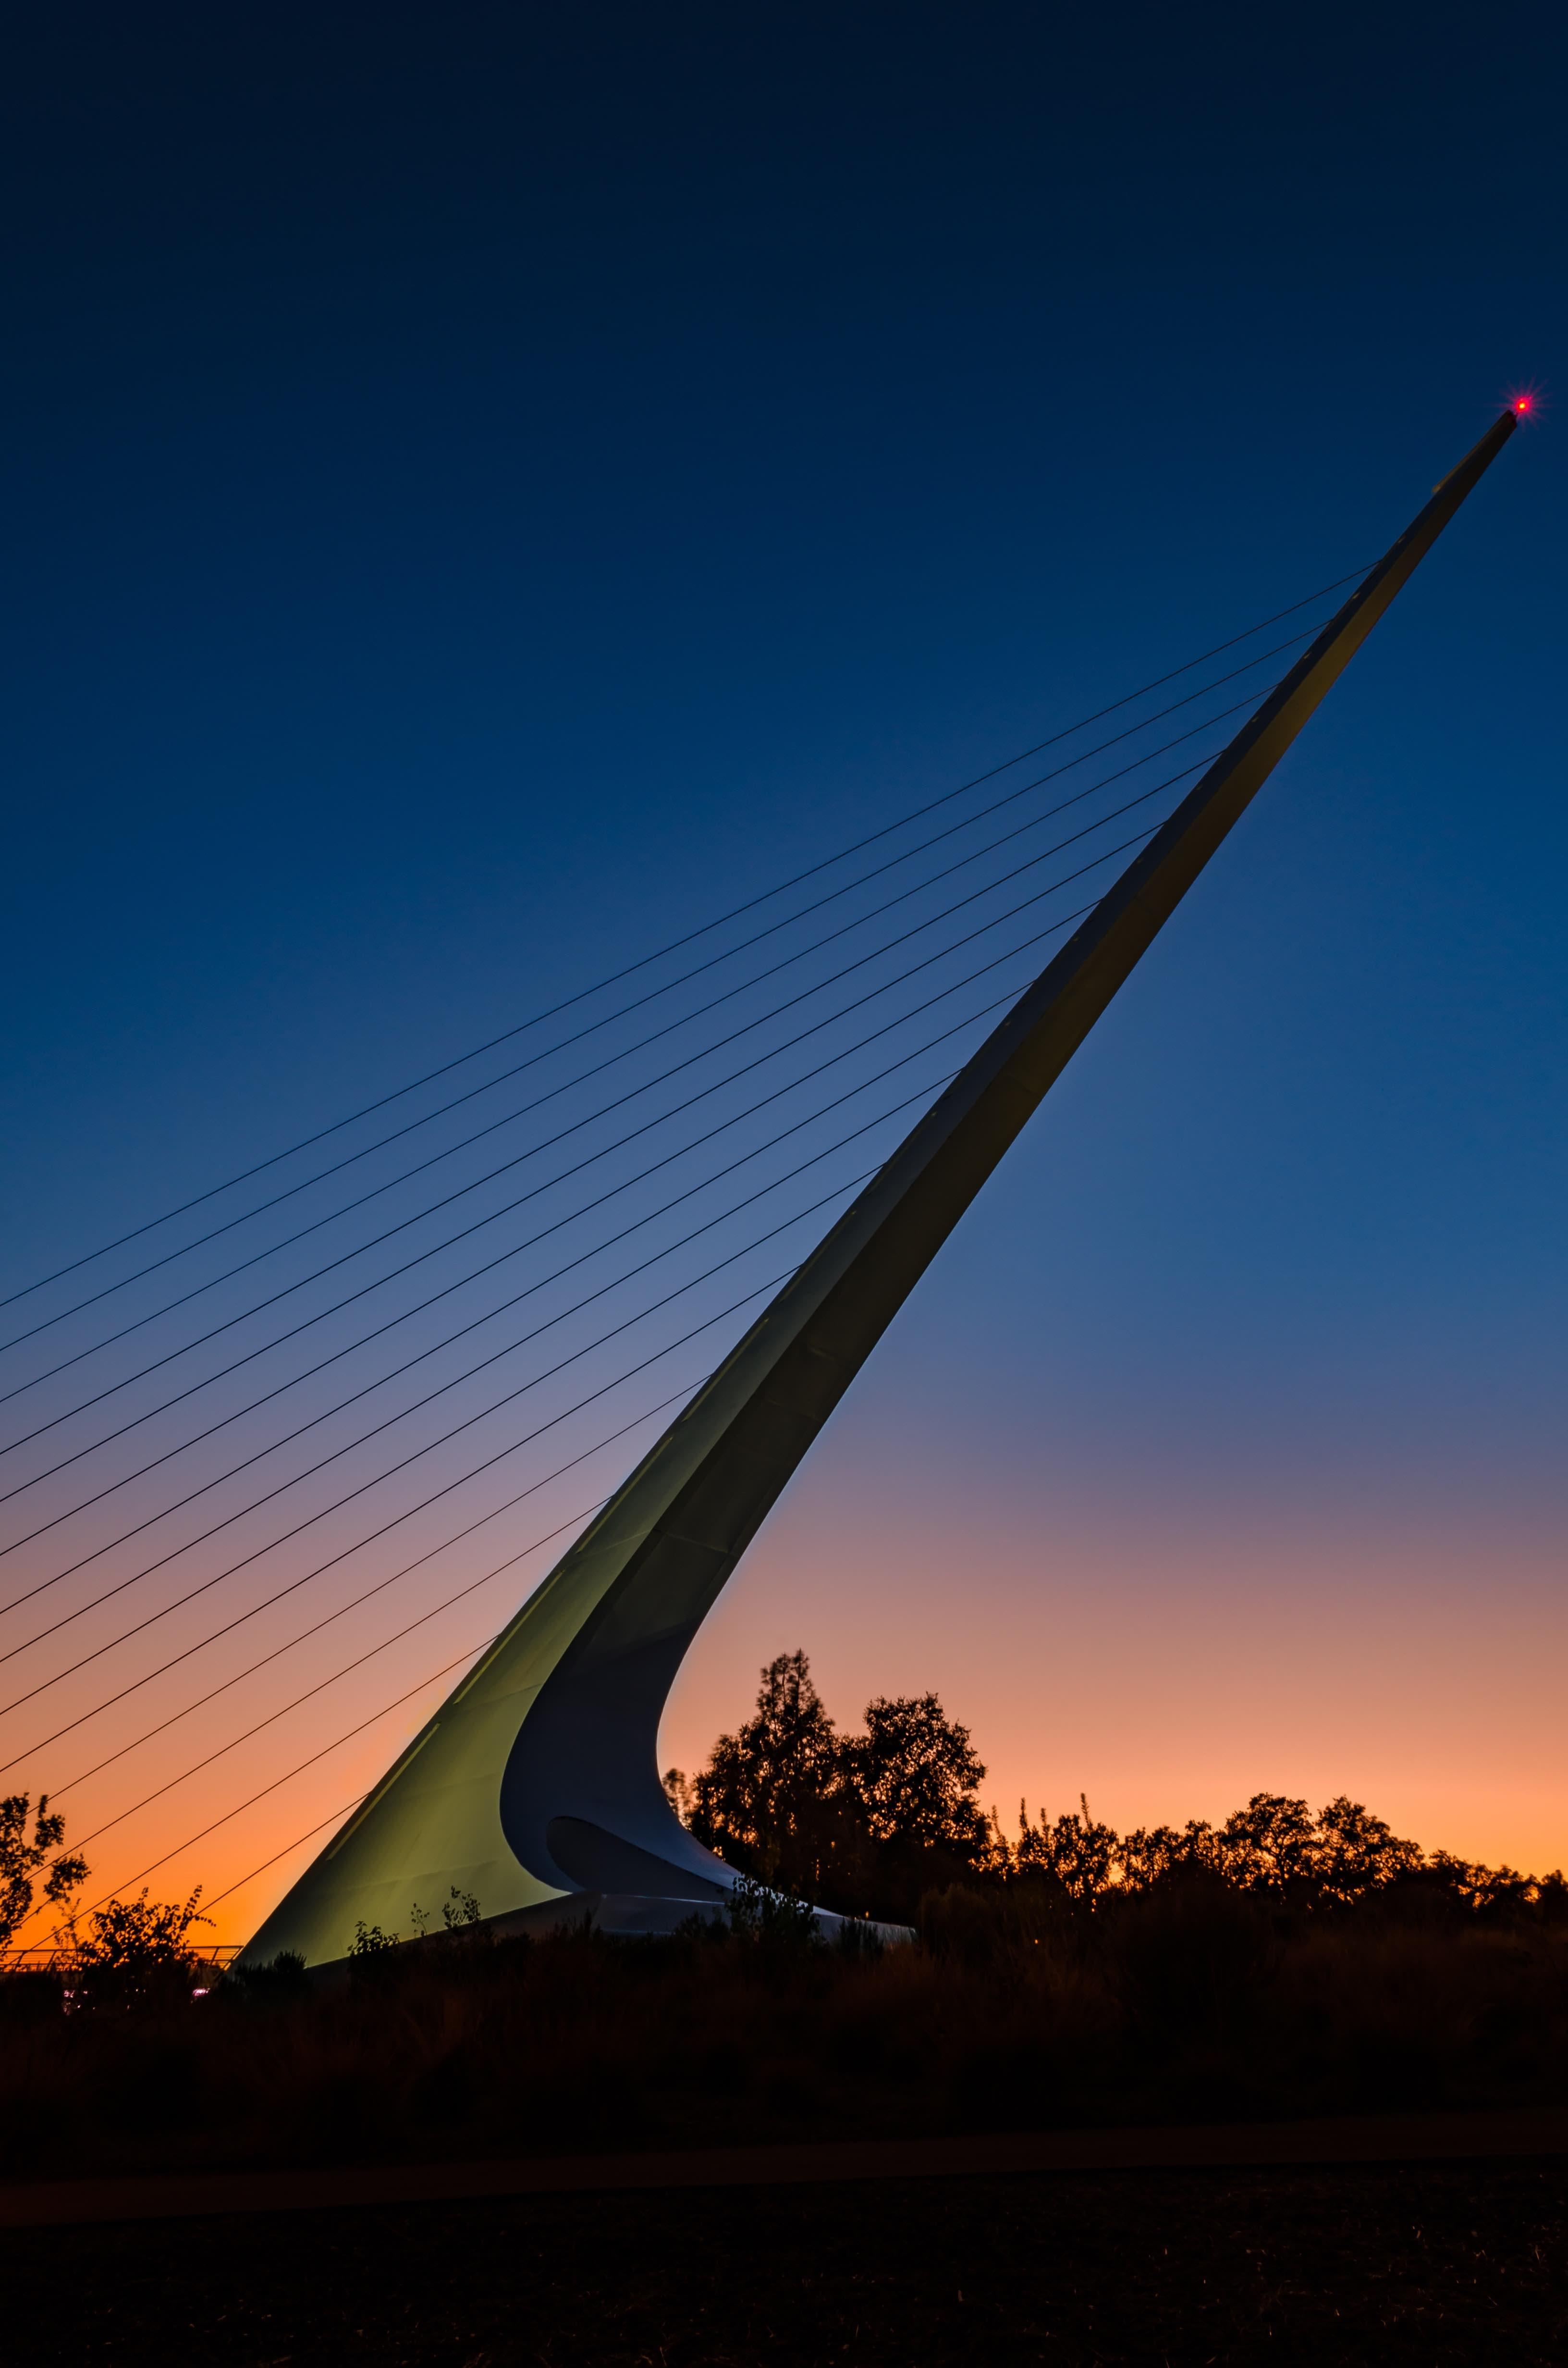 The Sundial Bridge in Redding, California